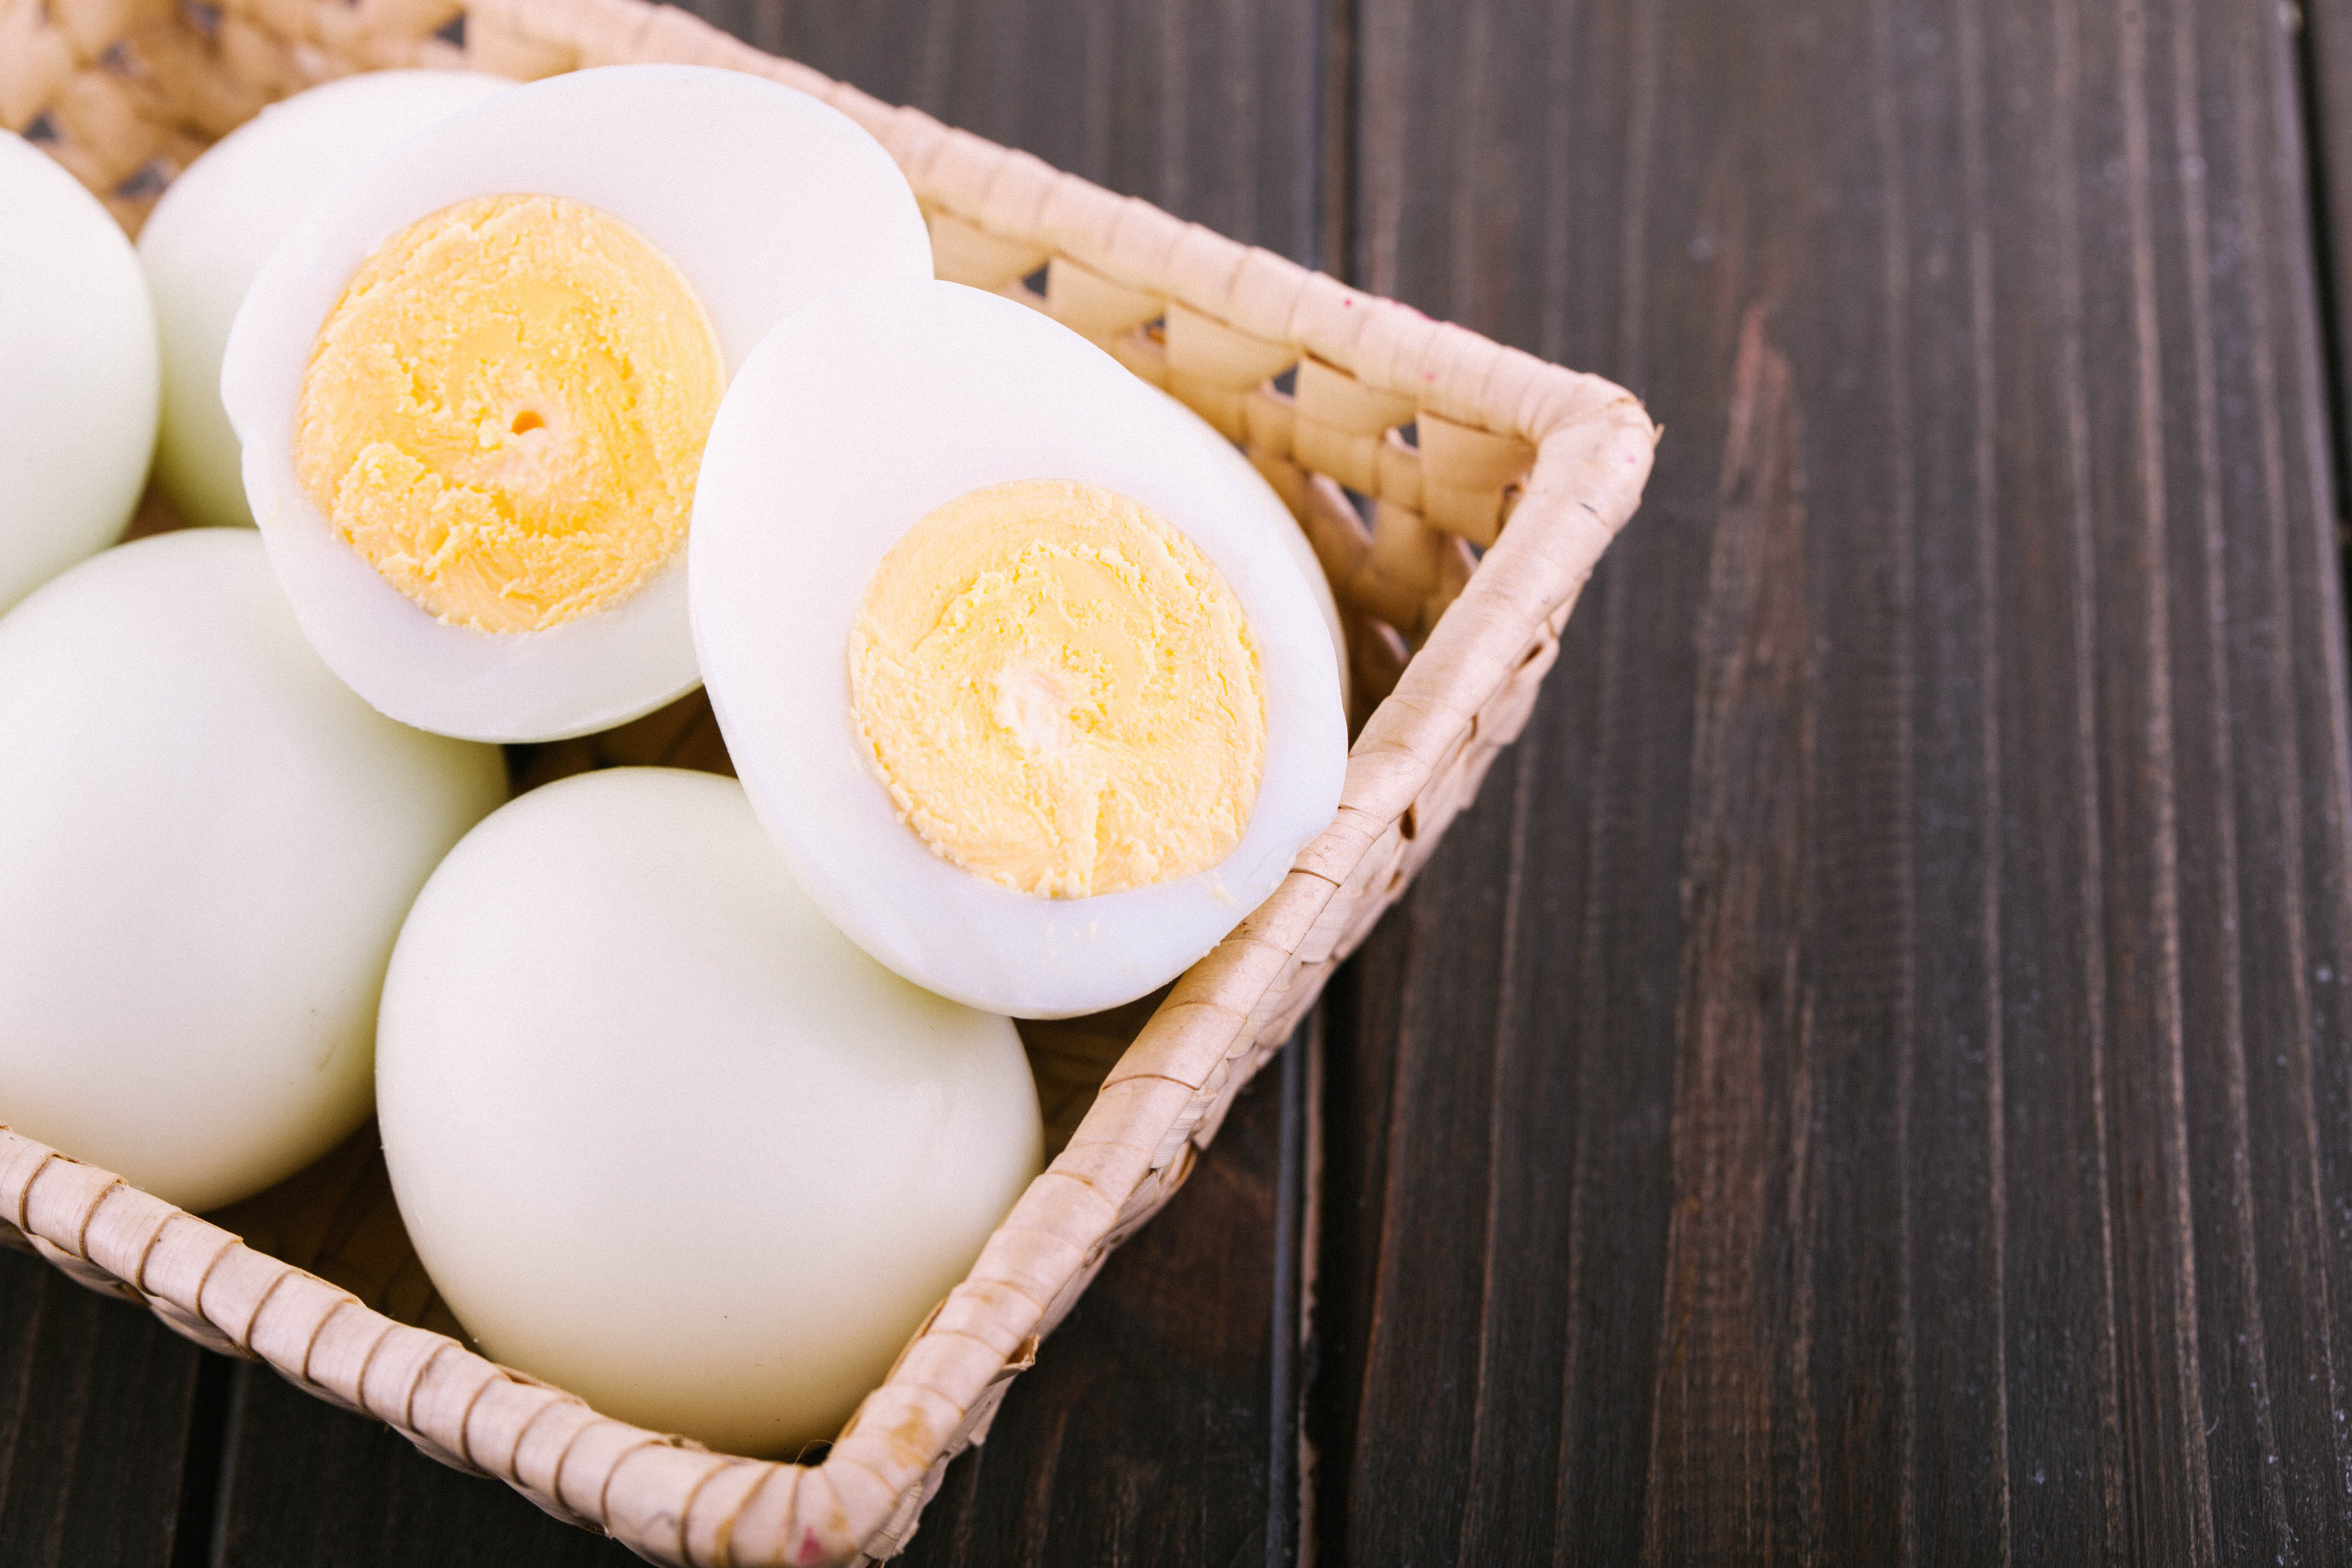 Портятся очень быстро: сколько дней можно хранить вареные яйца, чтобы не отравиться ими